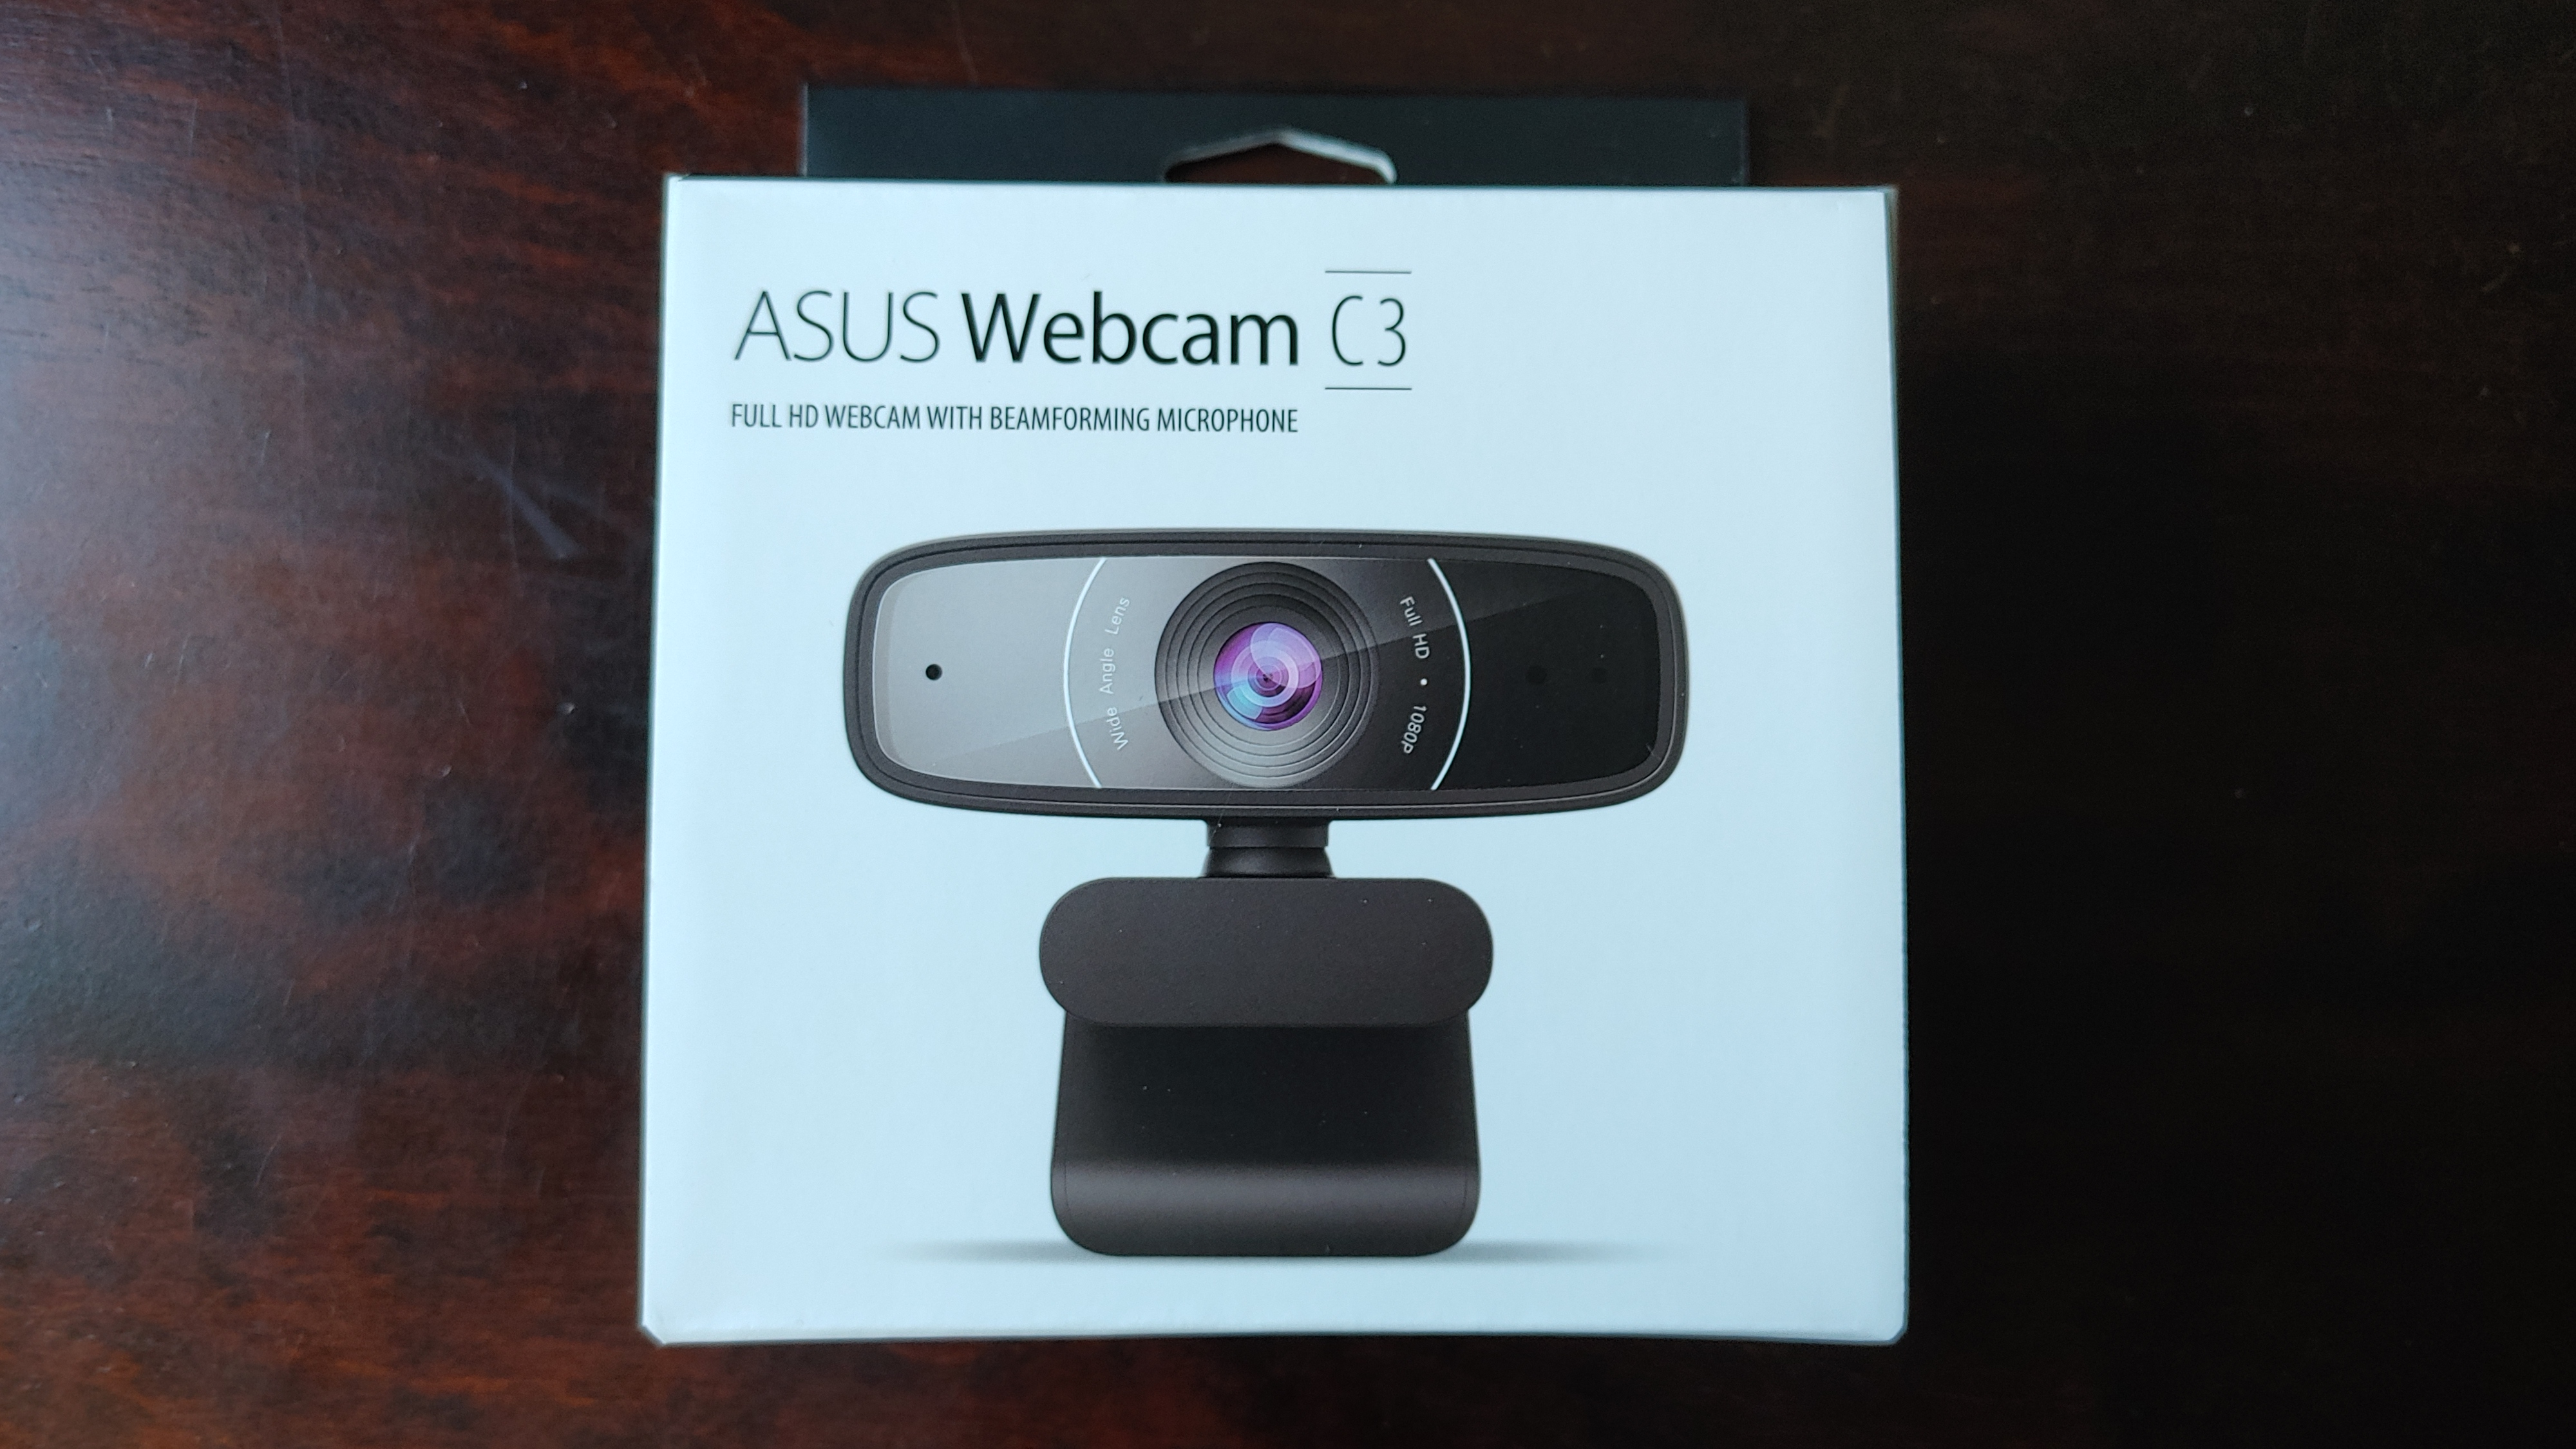 WEBカメラ「ASUS Webcam C3」をゲット。オンライン会議におすすめです 